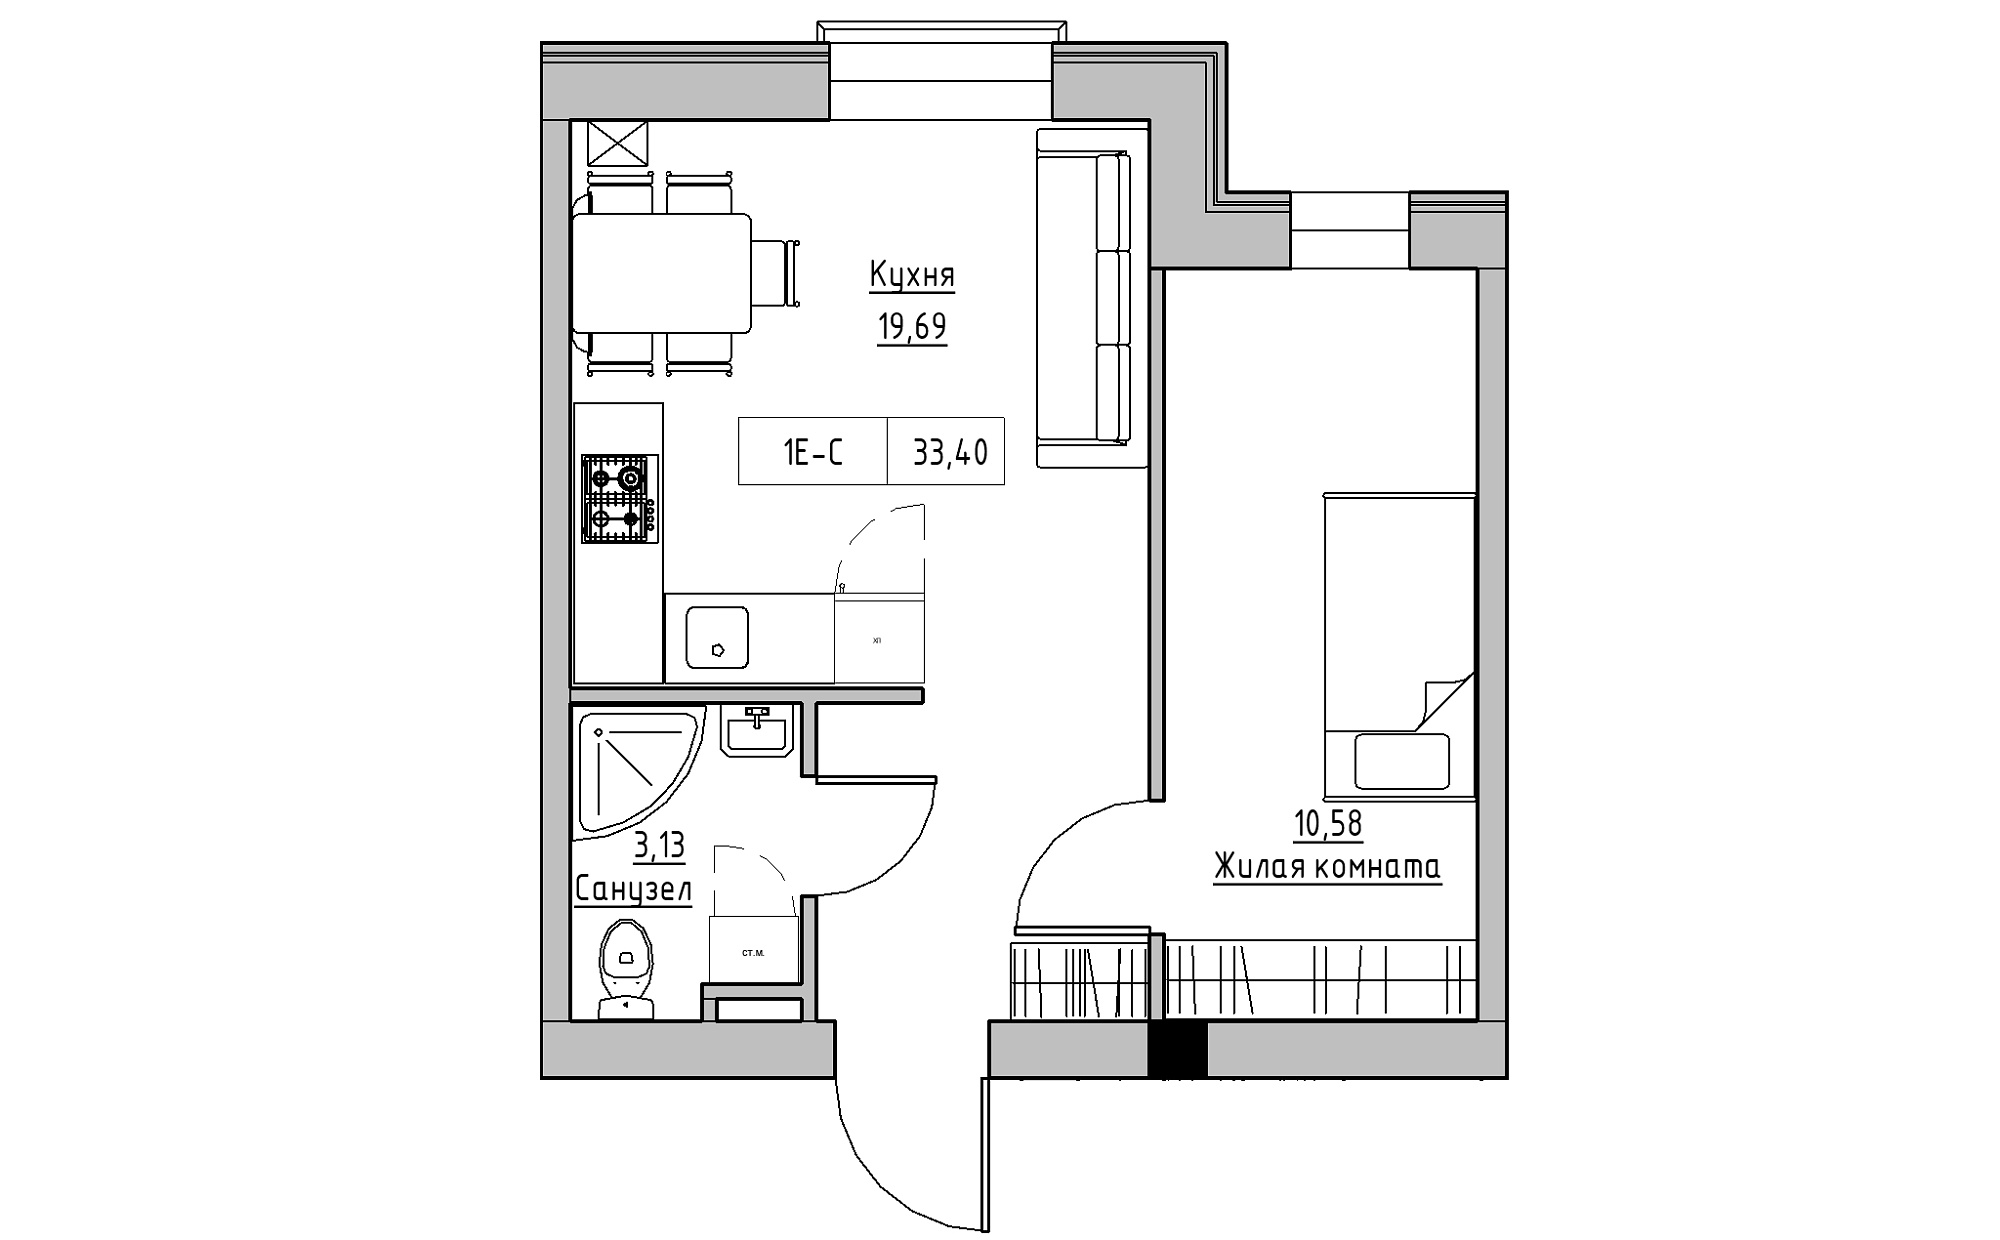 Планування 1-к квартира площею 33.4м2, KS-022-01/0008.